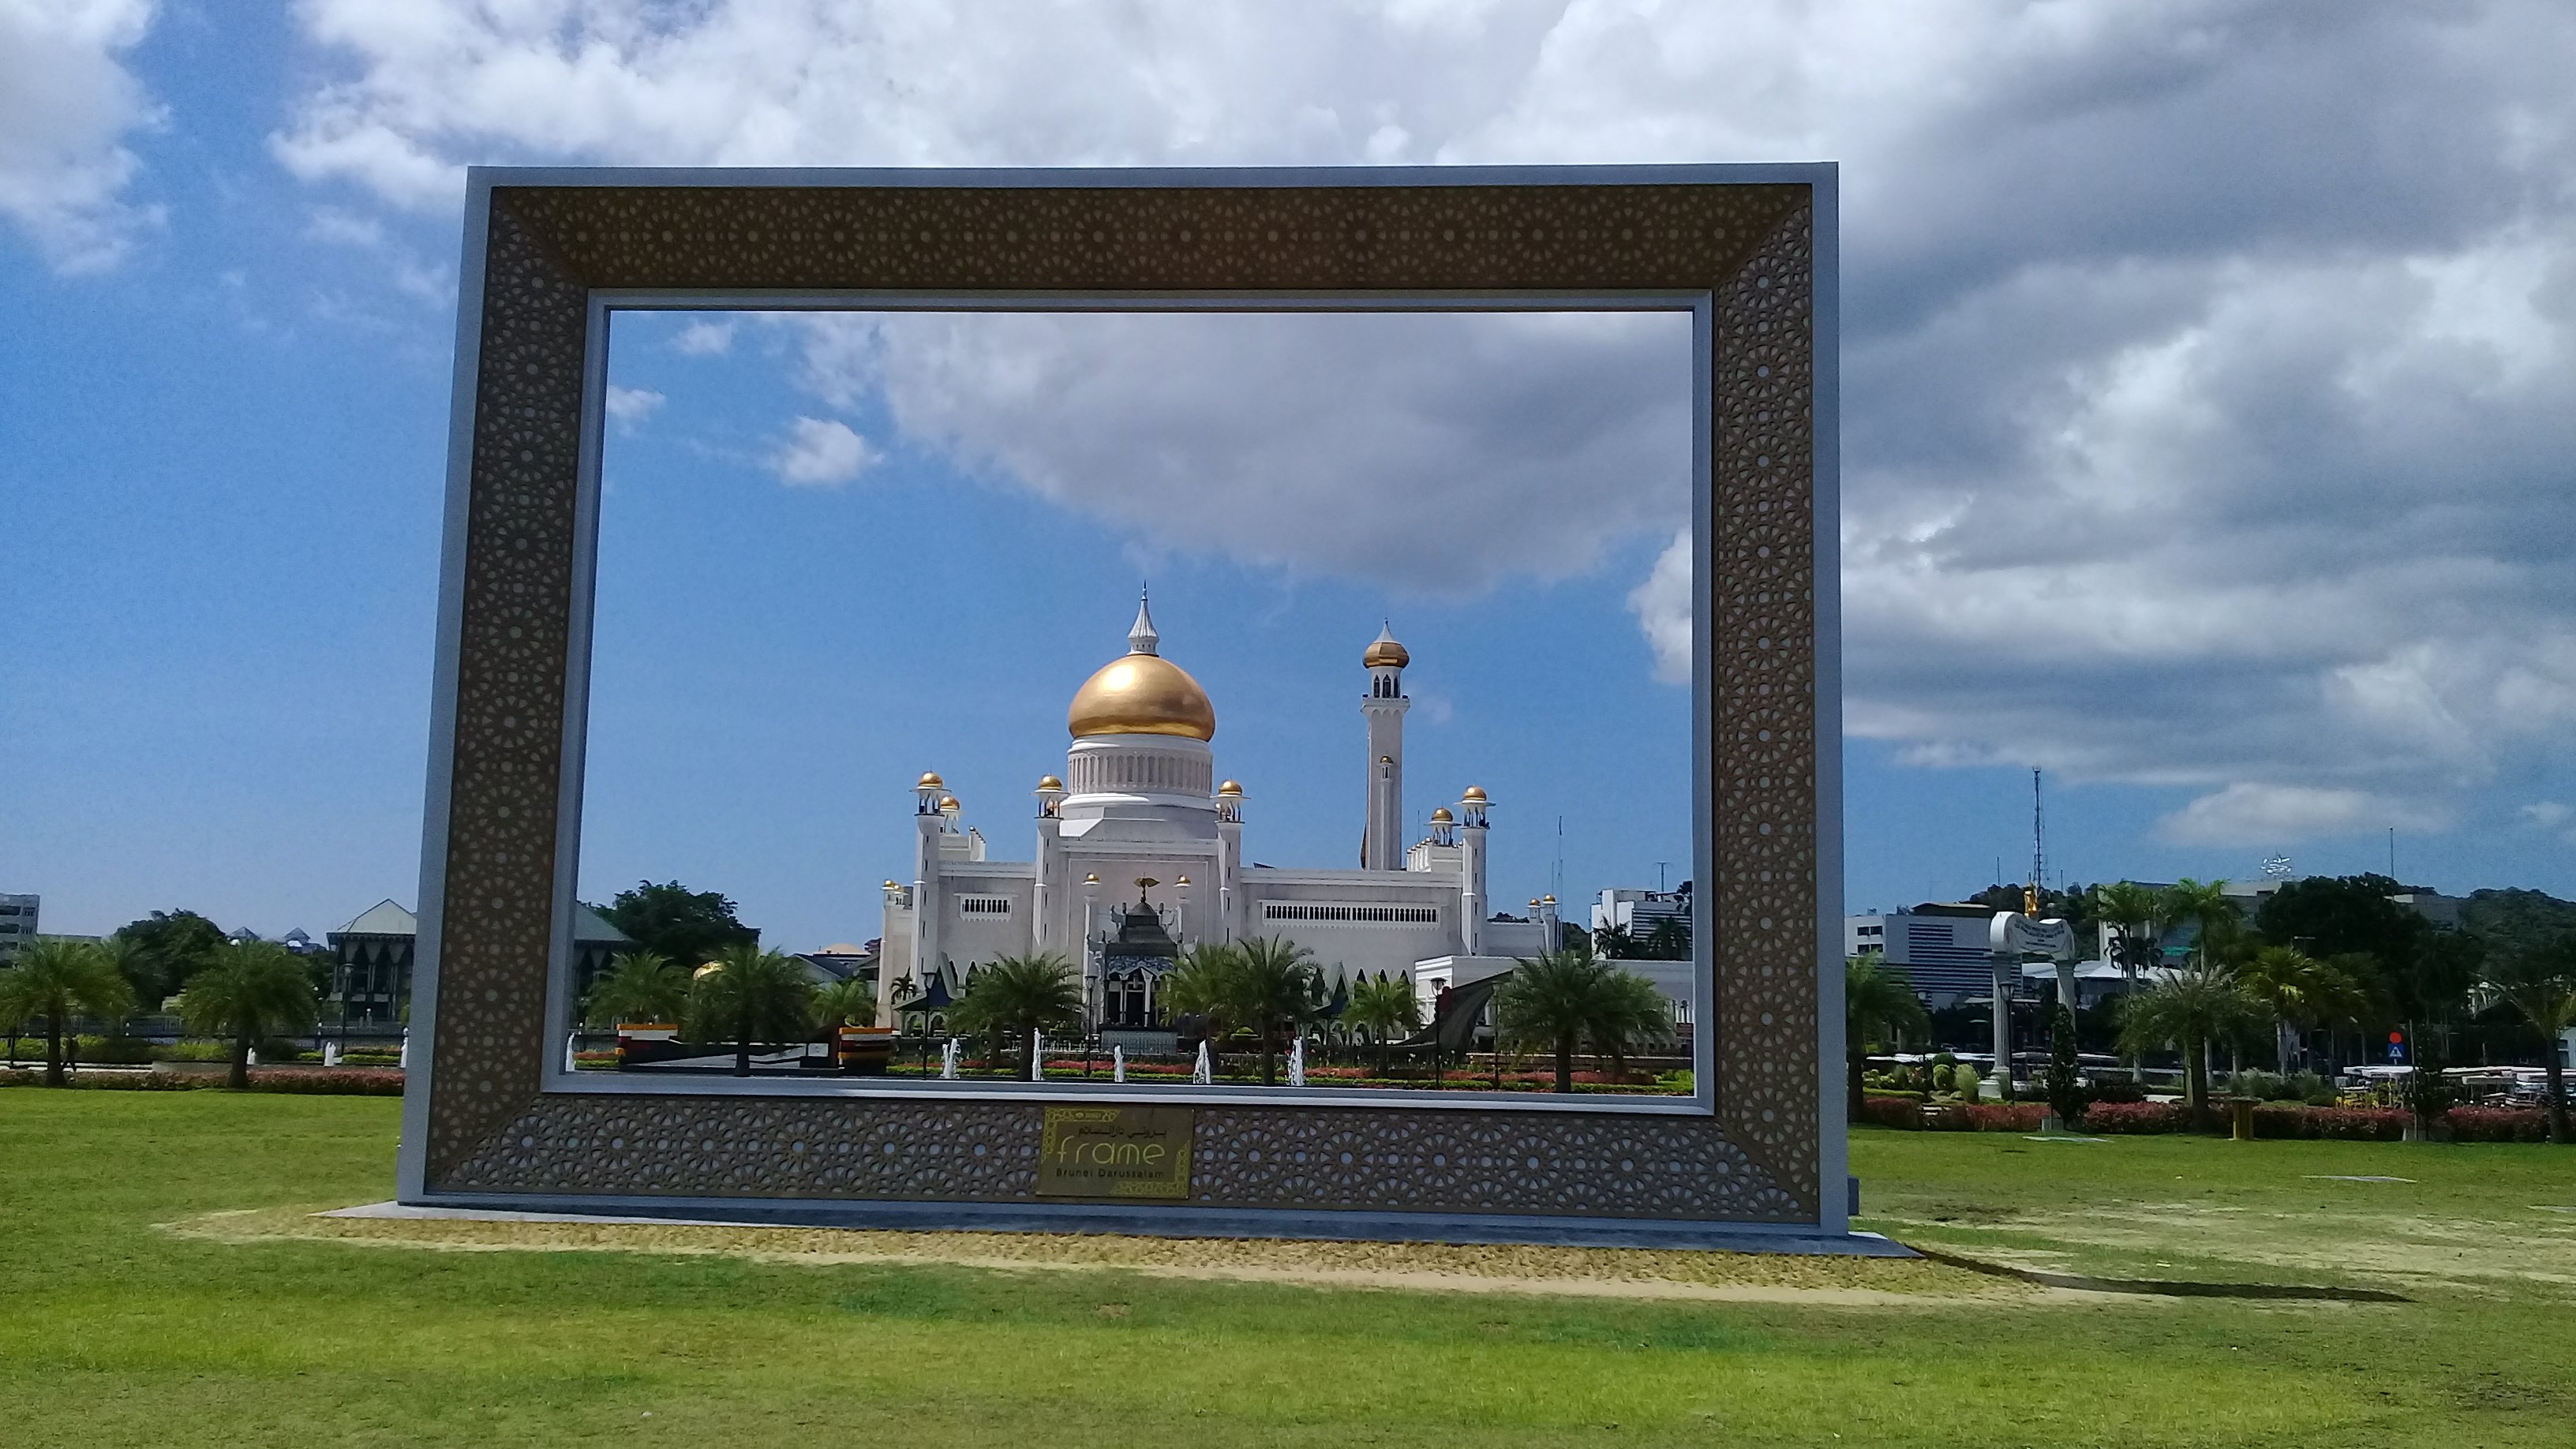 2024年 The Frame Brunei Darussalam - 出発前に知っておくべきことすべて - トリップアドバイザー